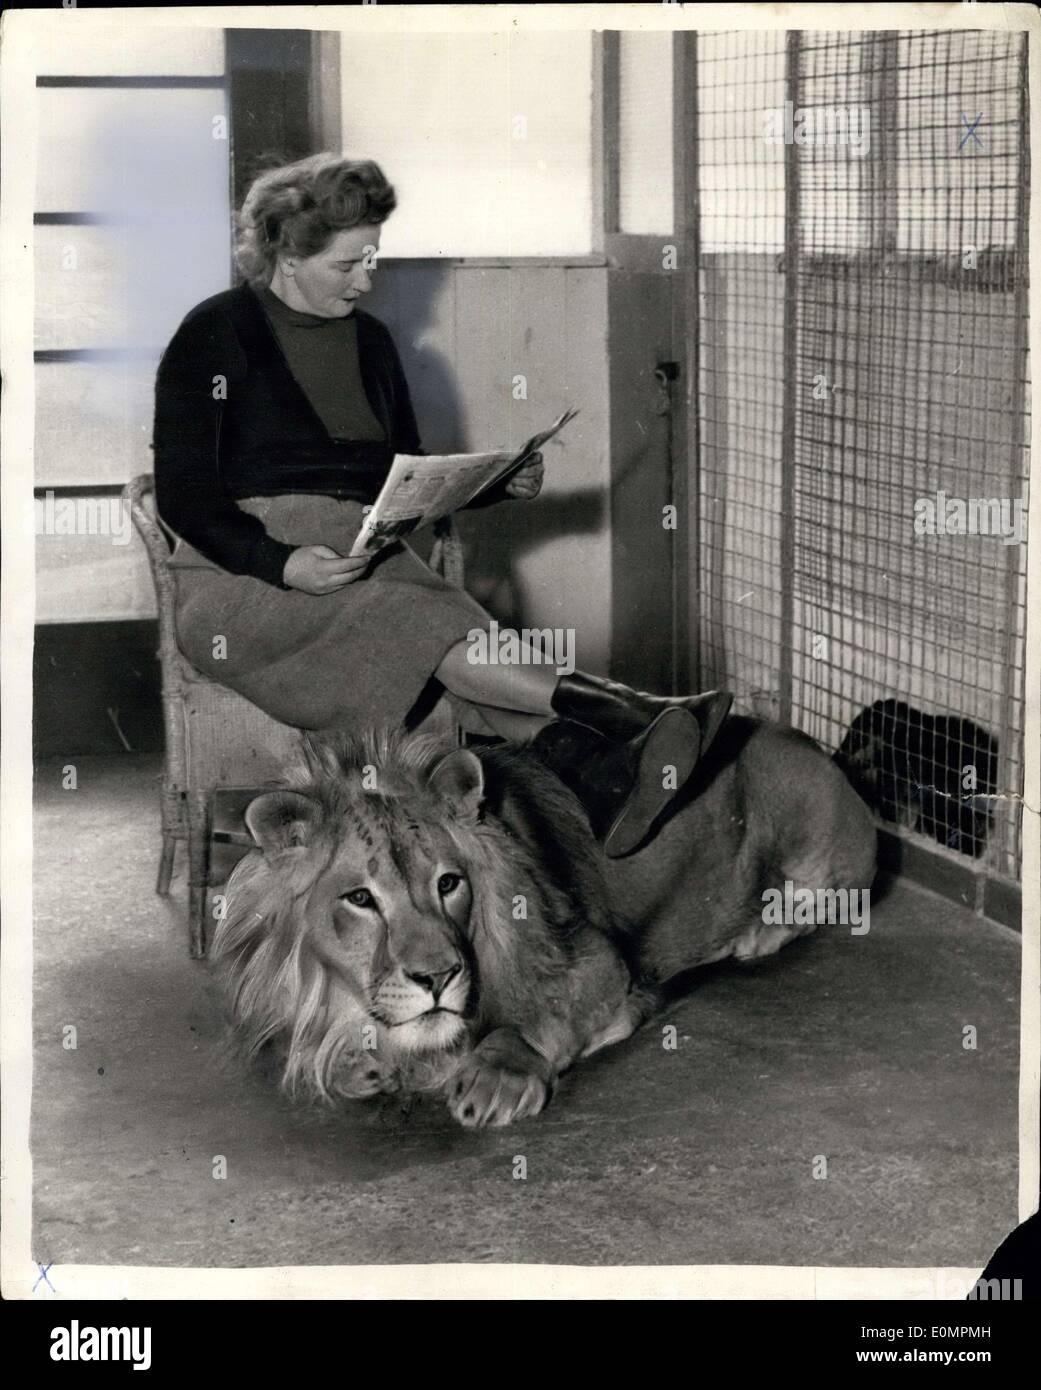 25 avril 1956 - comme du Rajah doux comme un chiot - et c'est un lion : jamais pensé ce que ce serait comme avoir un adulte shaggy mained lion à propos de la chambre ? Eh bien, M. et Mme Frank Farrer de Southport, Lancs, Zoo et n'avons Rajah est à la fois une exposition et un animal de compagnie. Parfois, il va même à l'intérieur de leur caravane, et à tout moment M. Ferrer est ''bienvenu'' dans la cage du Rajah. Elle utilise souvent de lui comme d'un repose-pied, et l'emmène régulièrement pour des promenades sur sa chaîne. Les sections locales sont tout à fait l'habitude de voir cet étrange animal autour. Rajah est fréquemment utilisées dans des films,s et qu'il gagne un revenu équitable à partir de son apparence Banque D'Images